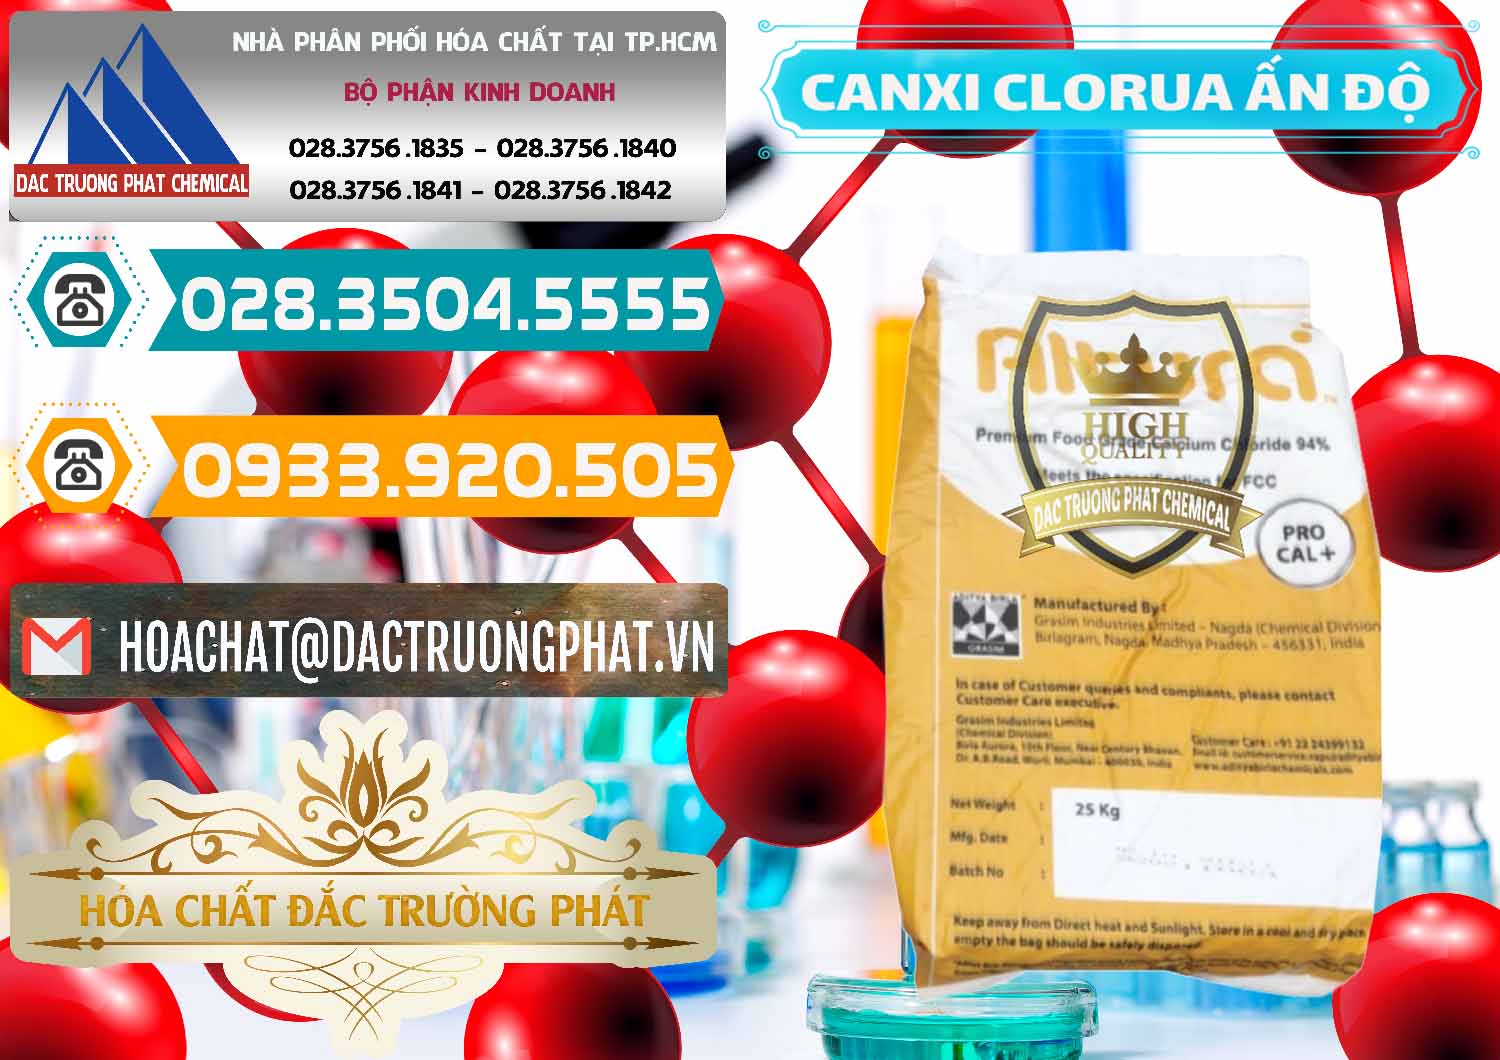 Bán và cung ứng CaCl2 – Canxi Clorua Food Grade Altura Aditya Birla Grasim Ấn Độ India - 0436 - Chuyên kinh doanh - phân phối hóa chất tại TP.HCM - congtyhoachat.vn